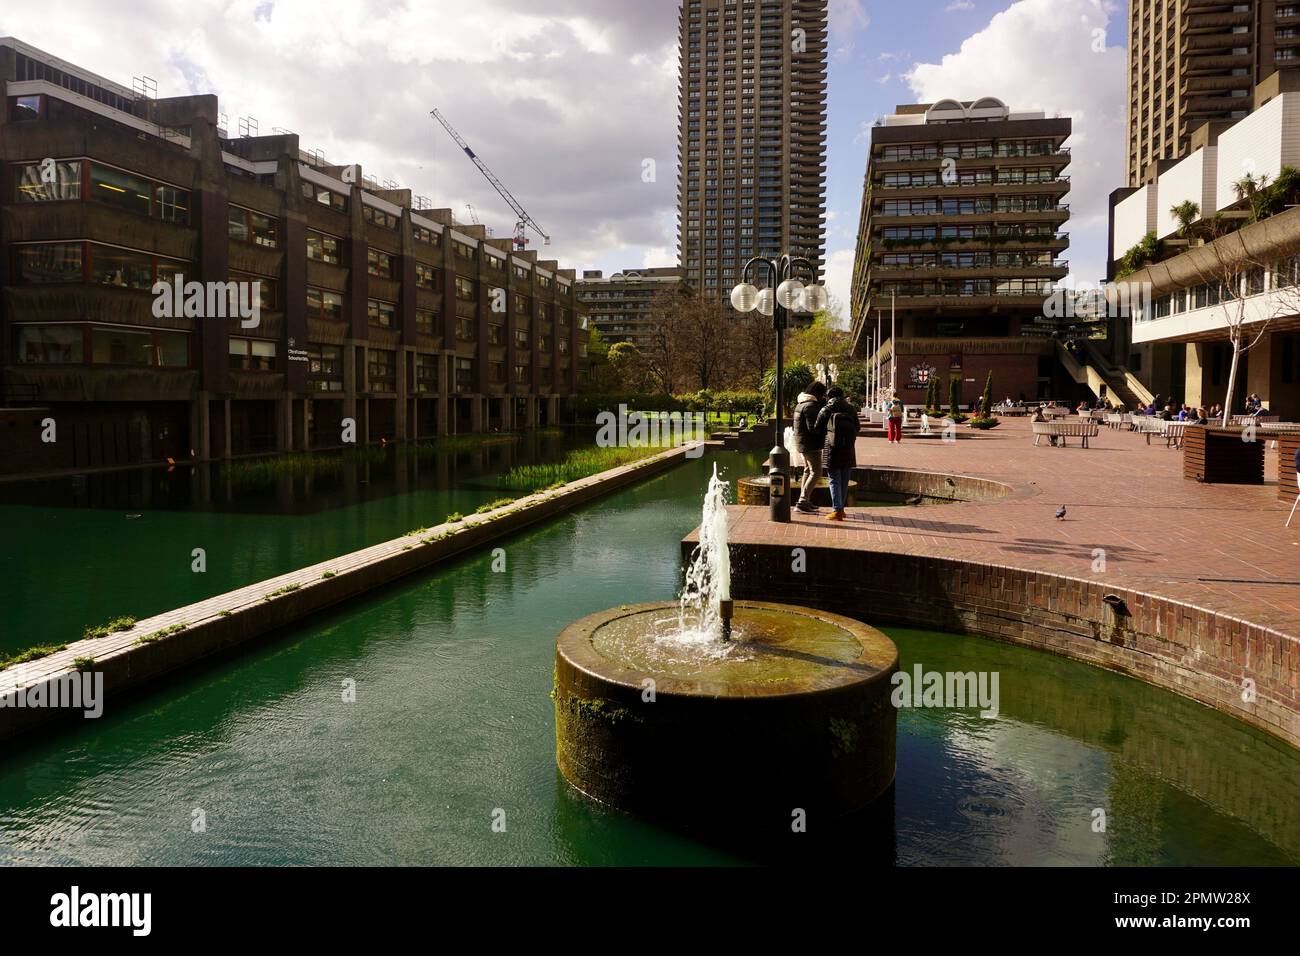 The Barbican Centre, London, United Kingdom Stock Photo